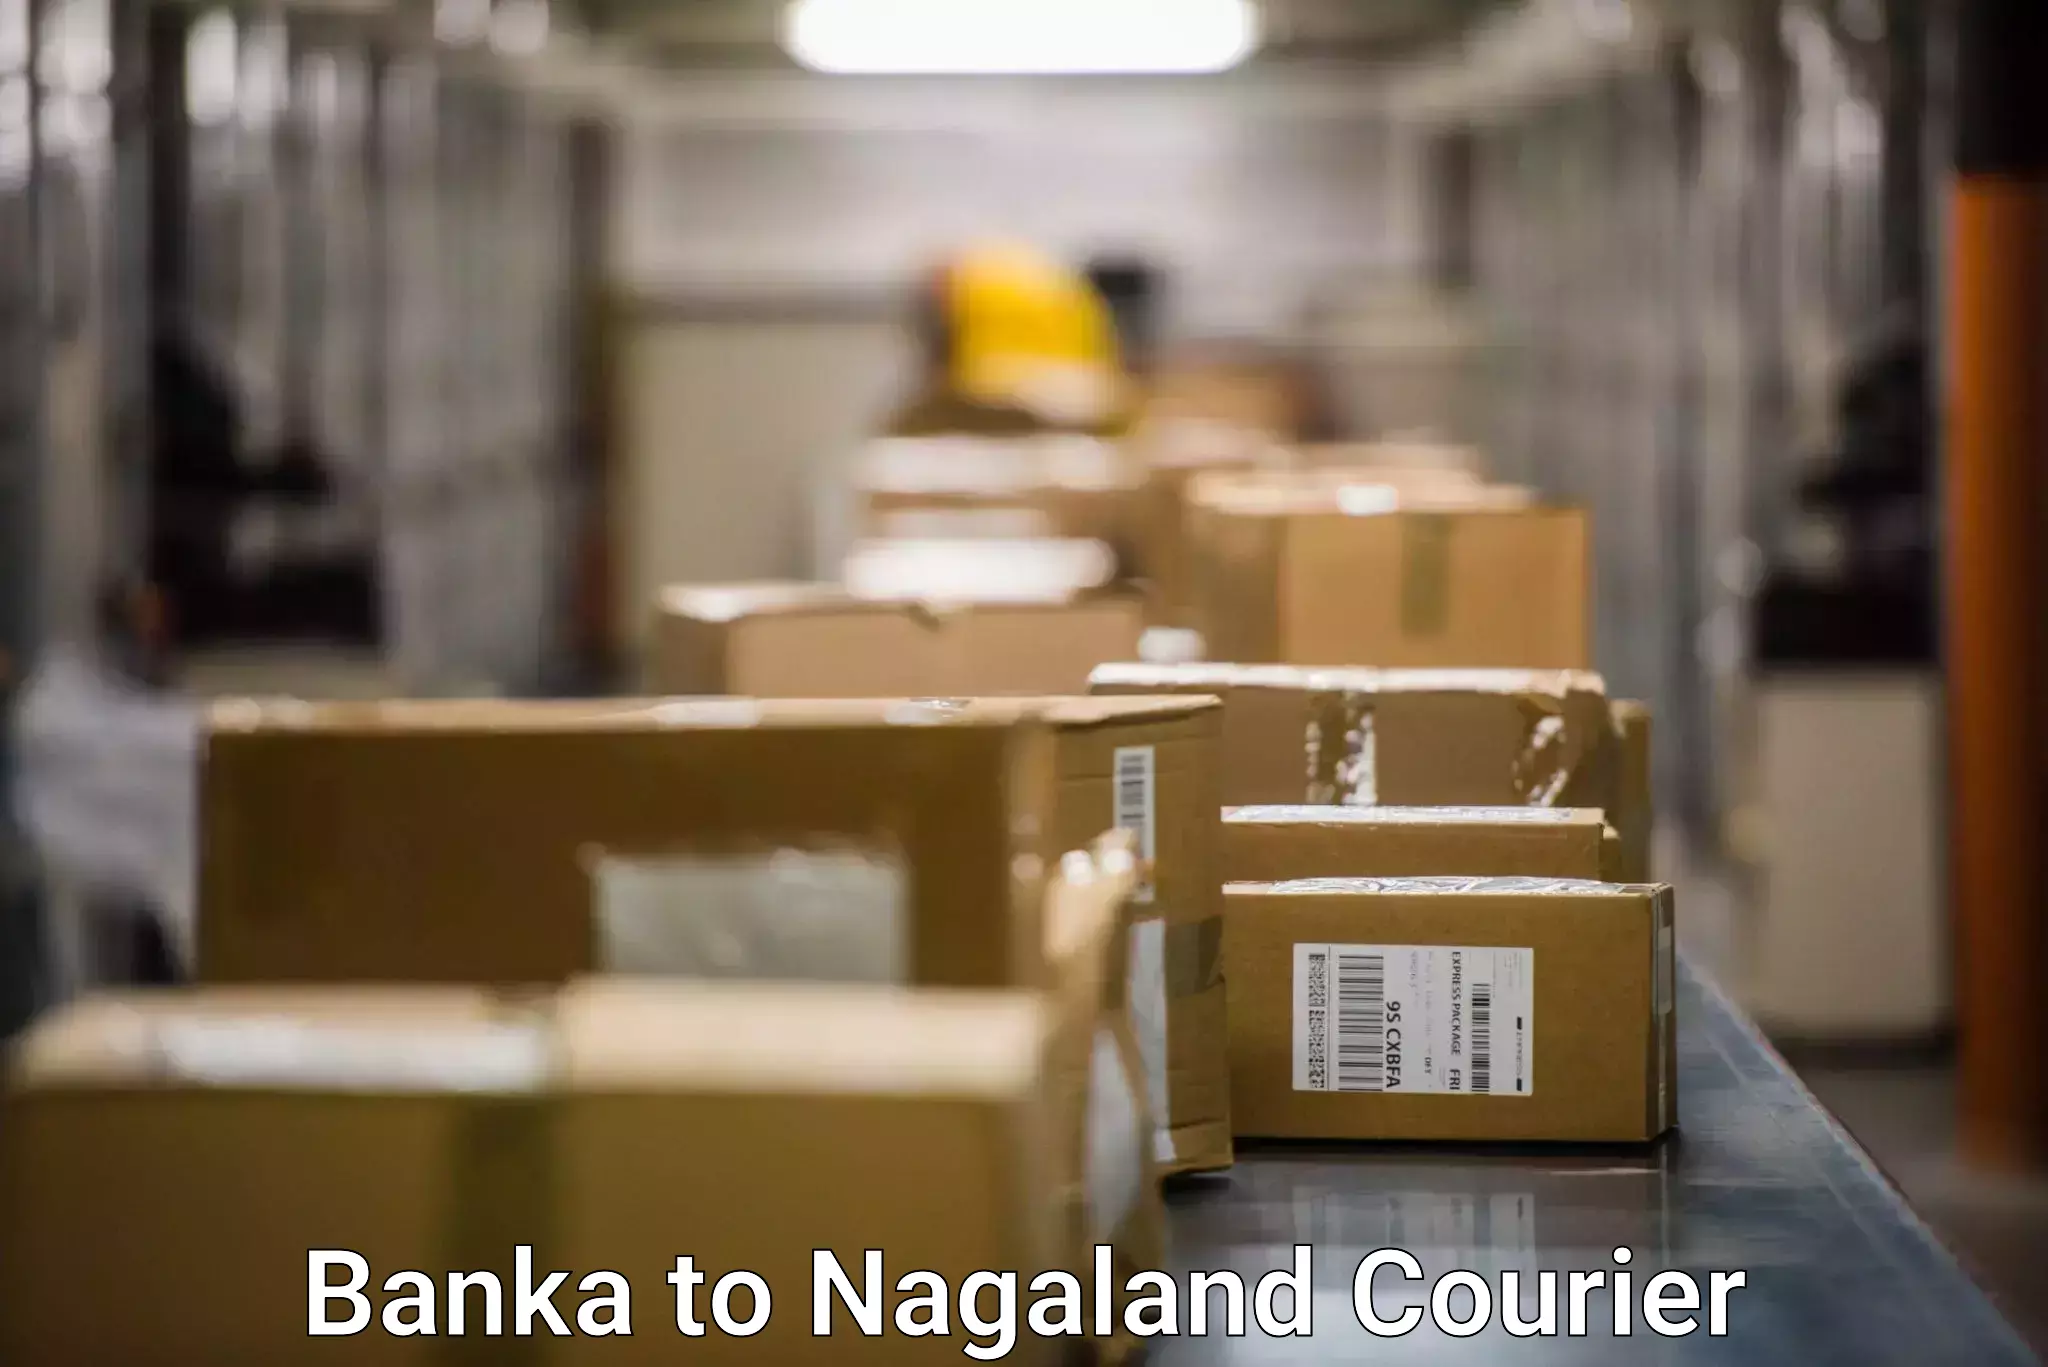 Global delivery options Banka to Nagaland